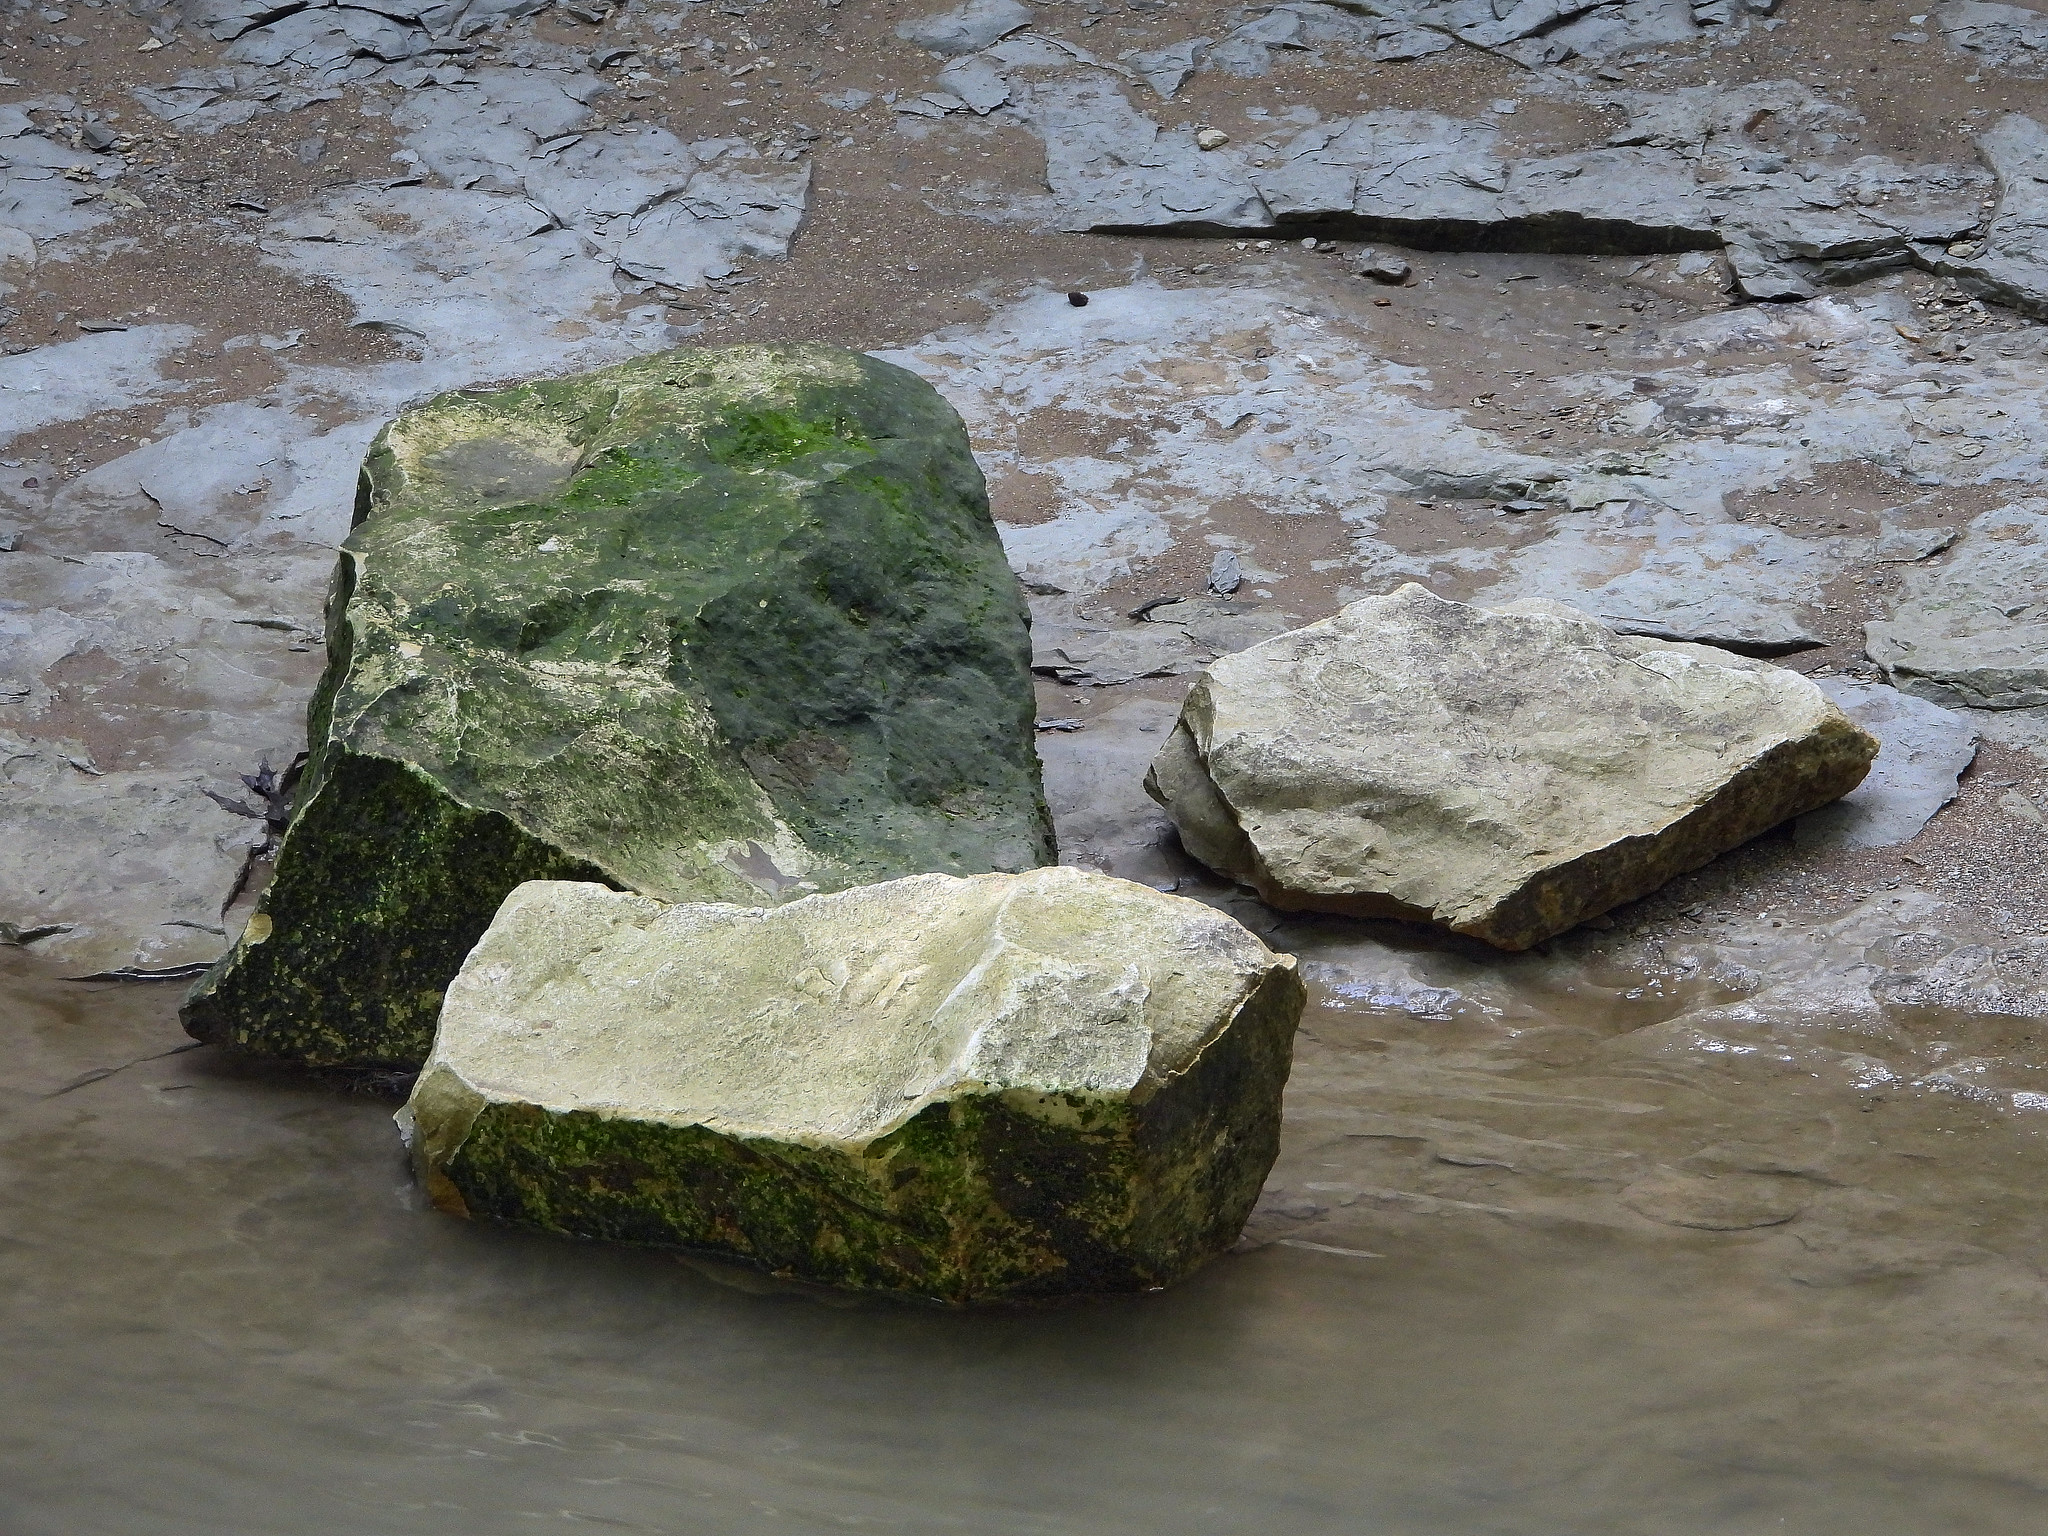 Three Rocks in the Creek